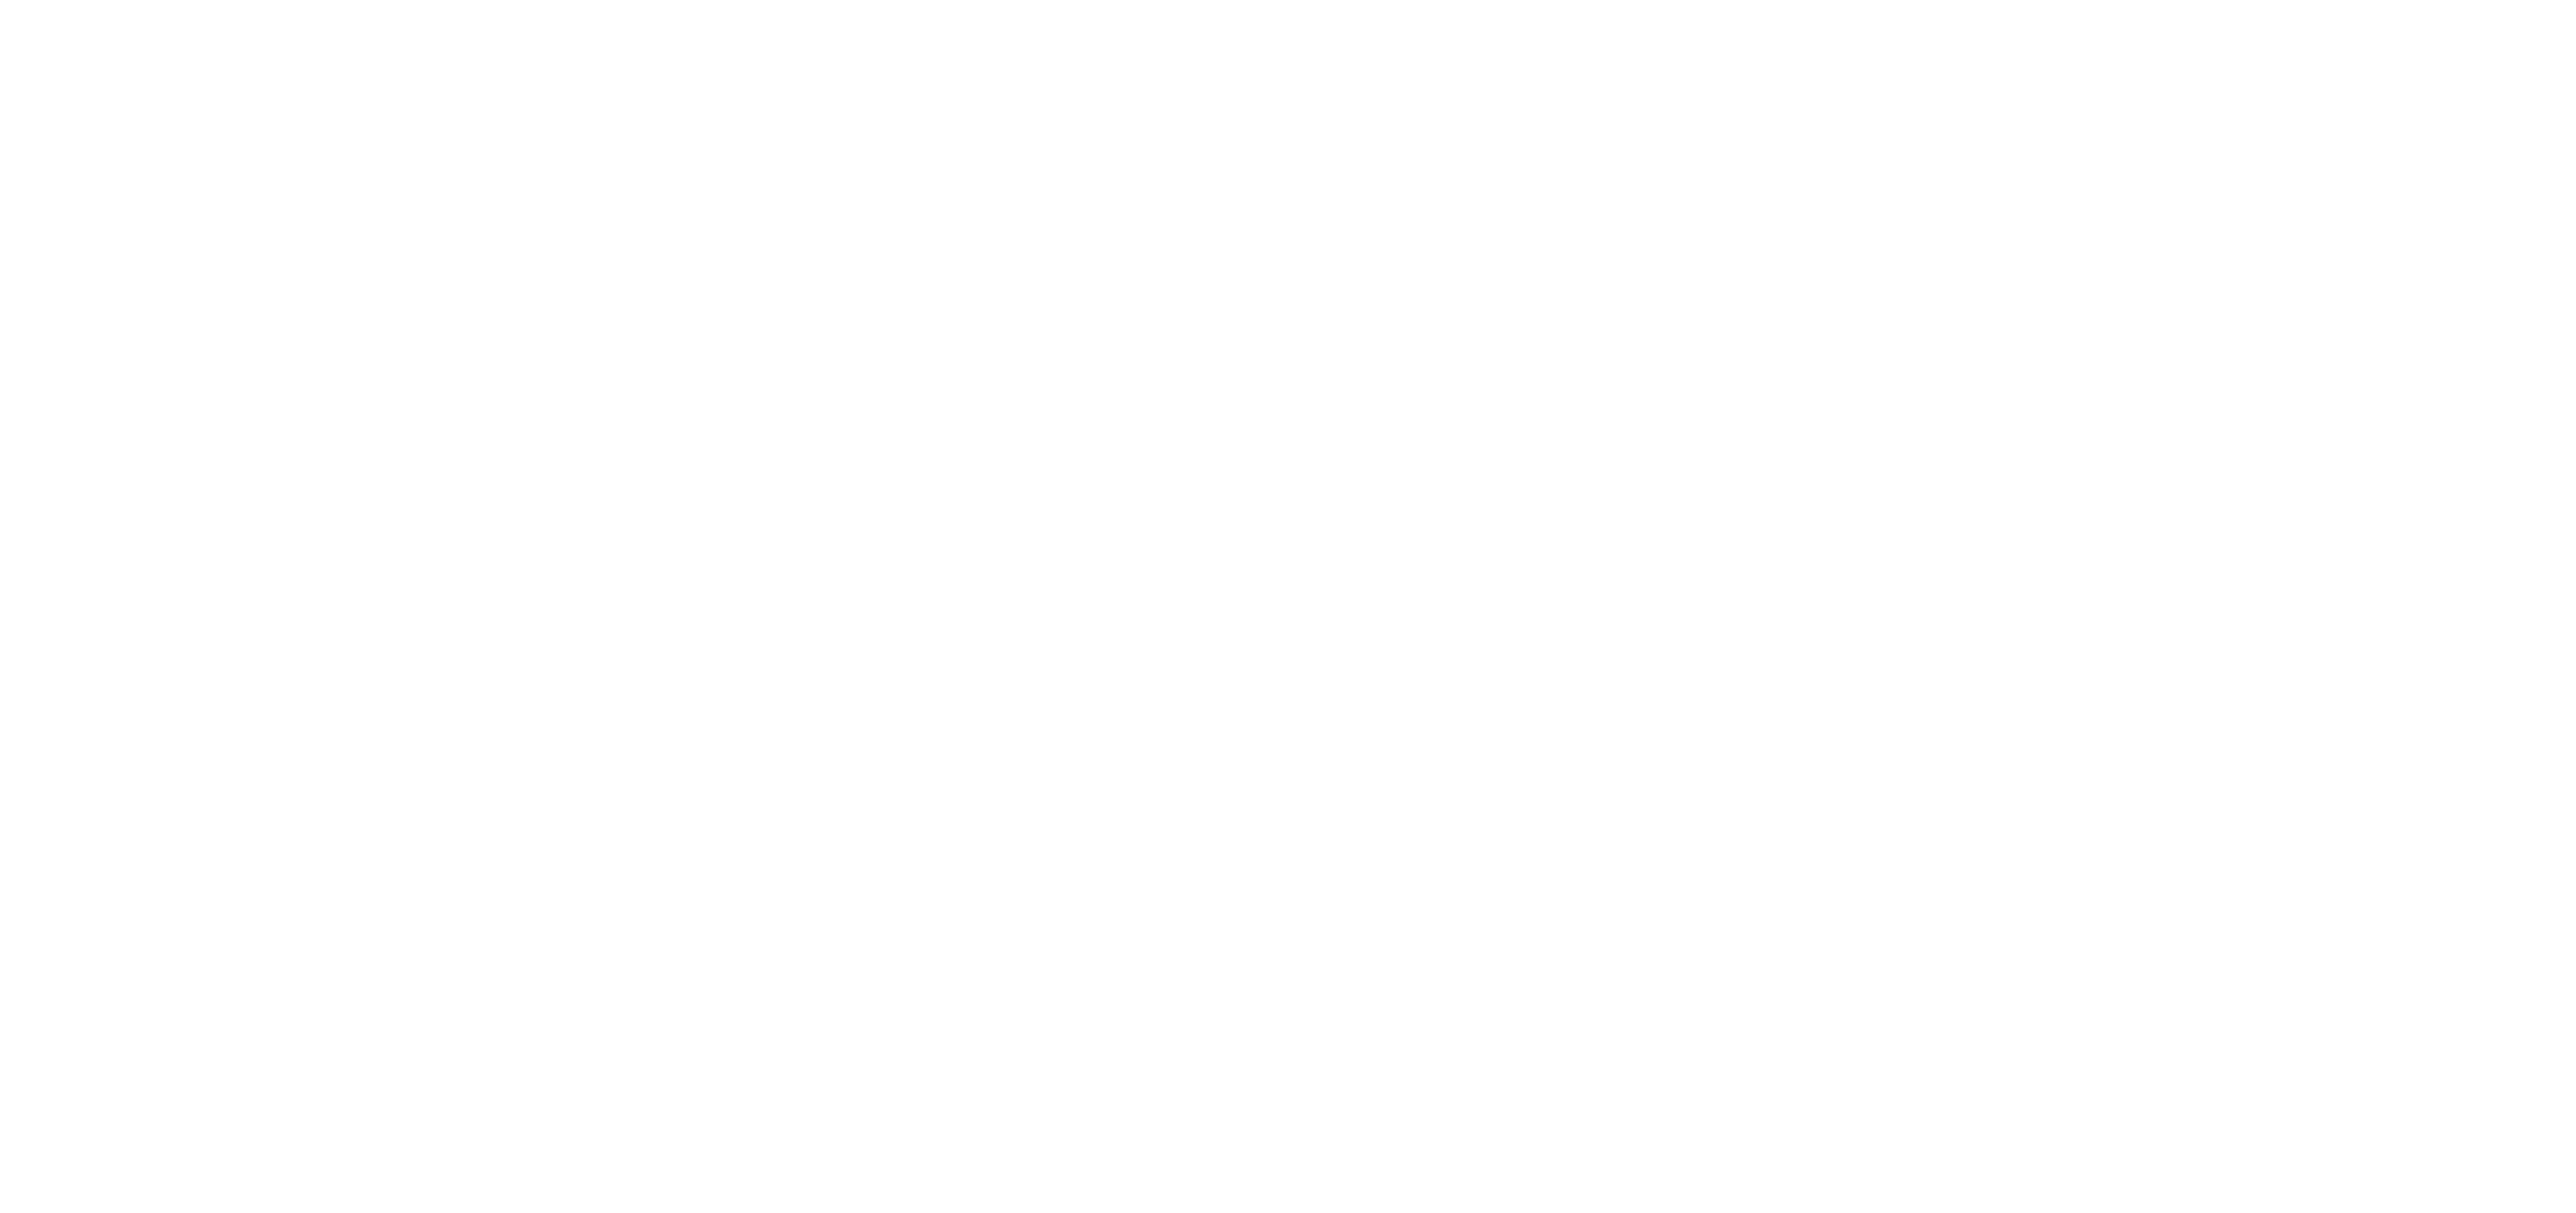 The Studio 15